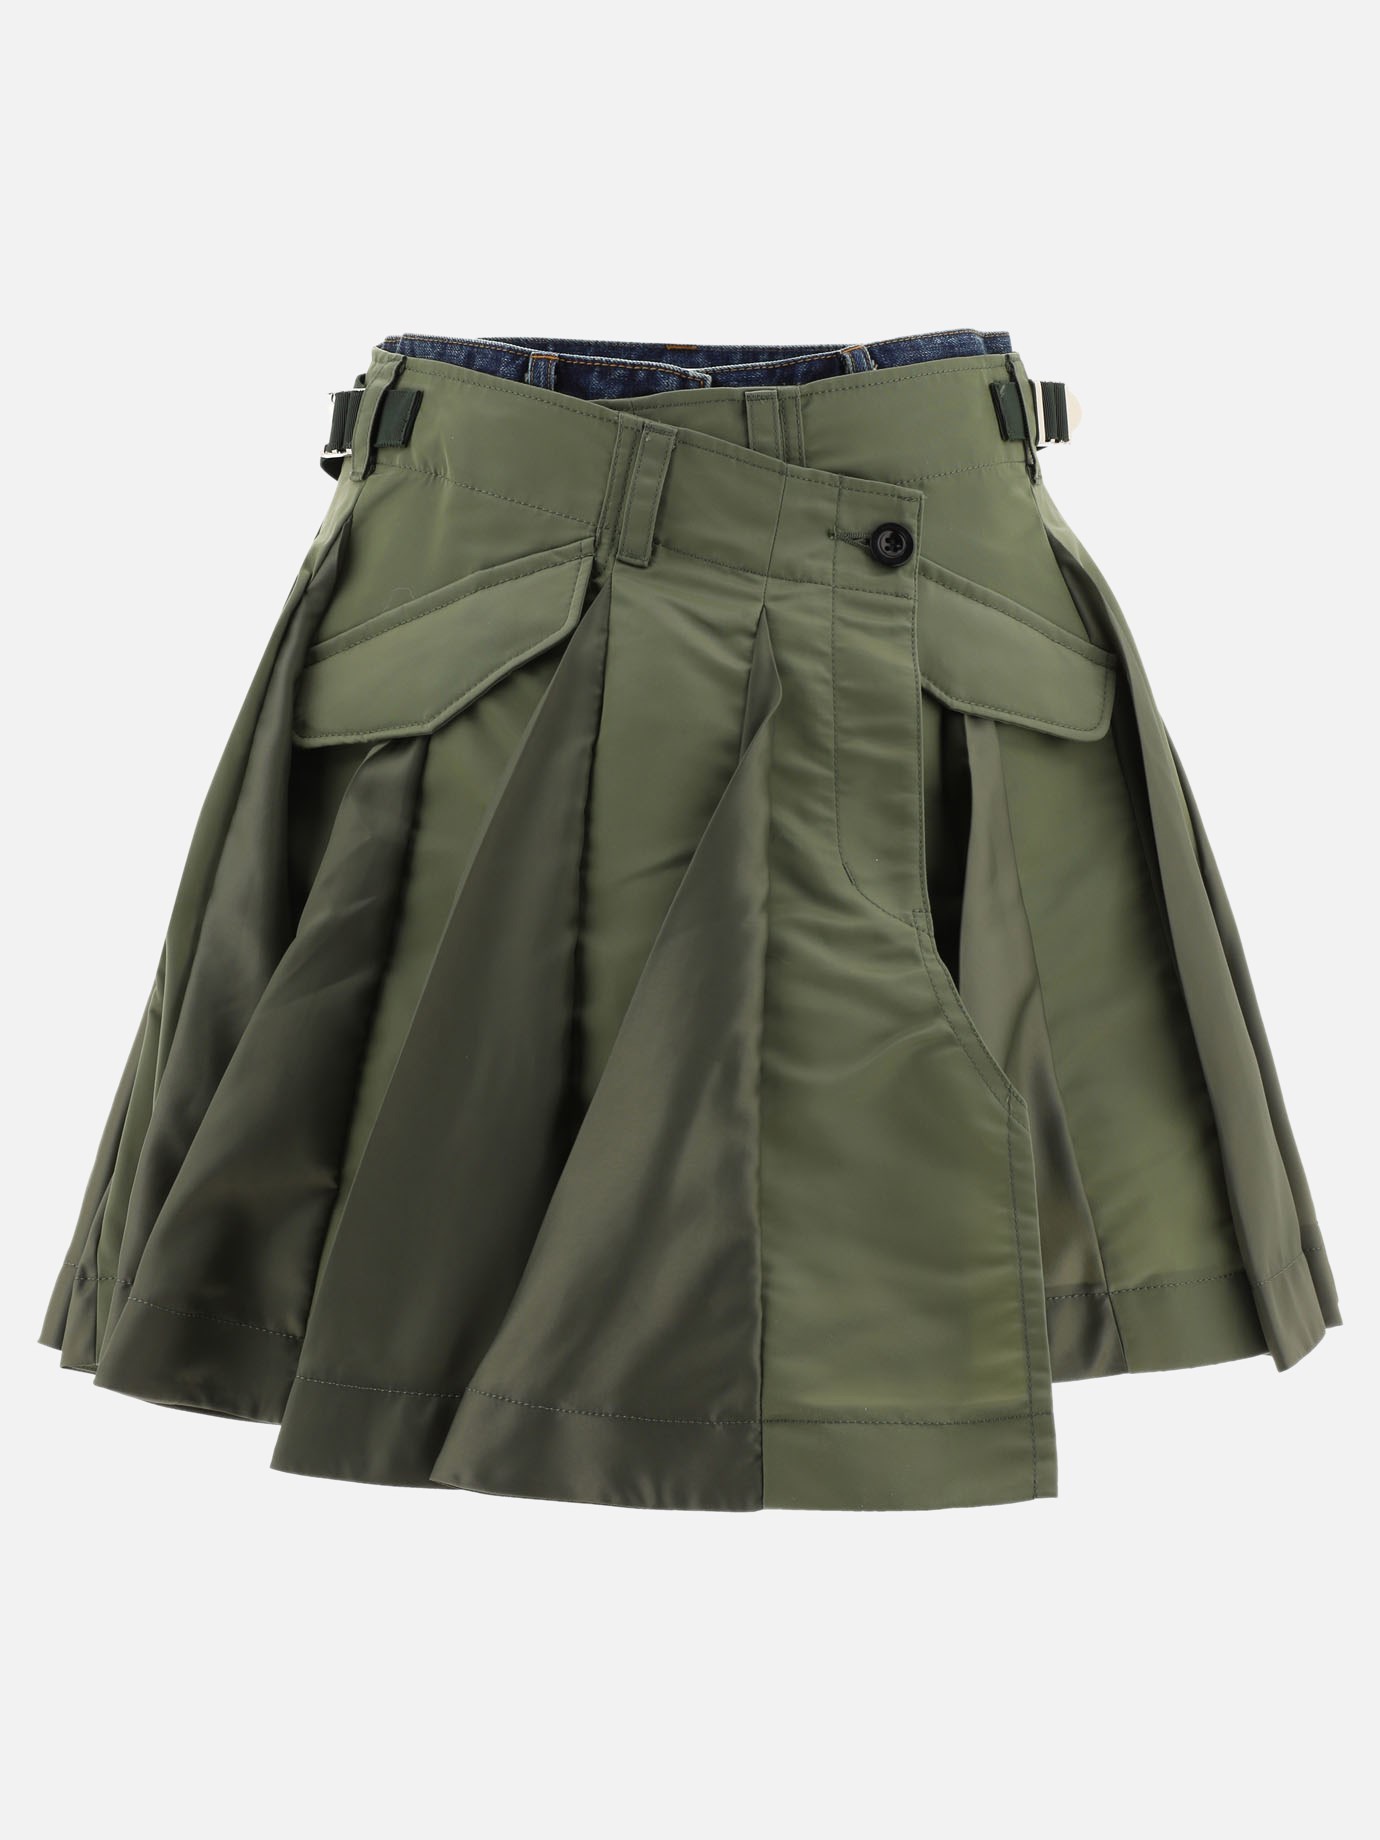  Hybrid shorts by Sacai - 0